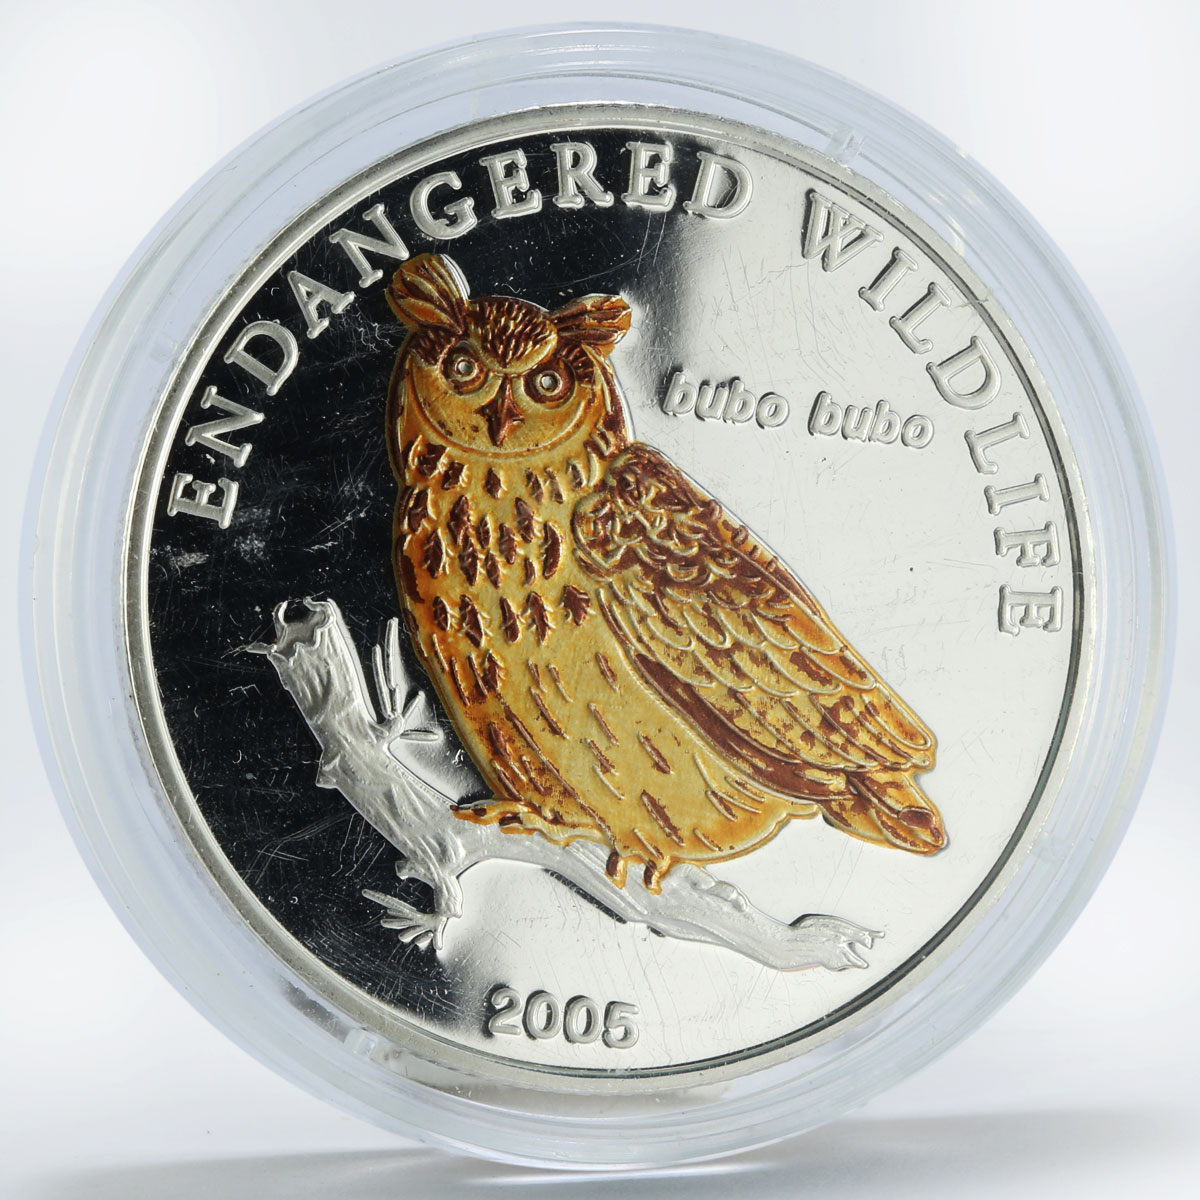 Mongolia 500 togrog Eurasian Owl Bubo silver coin 2005